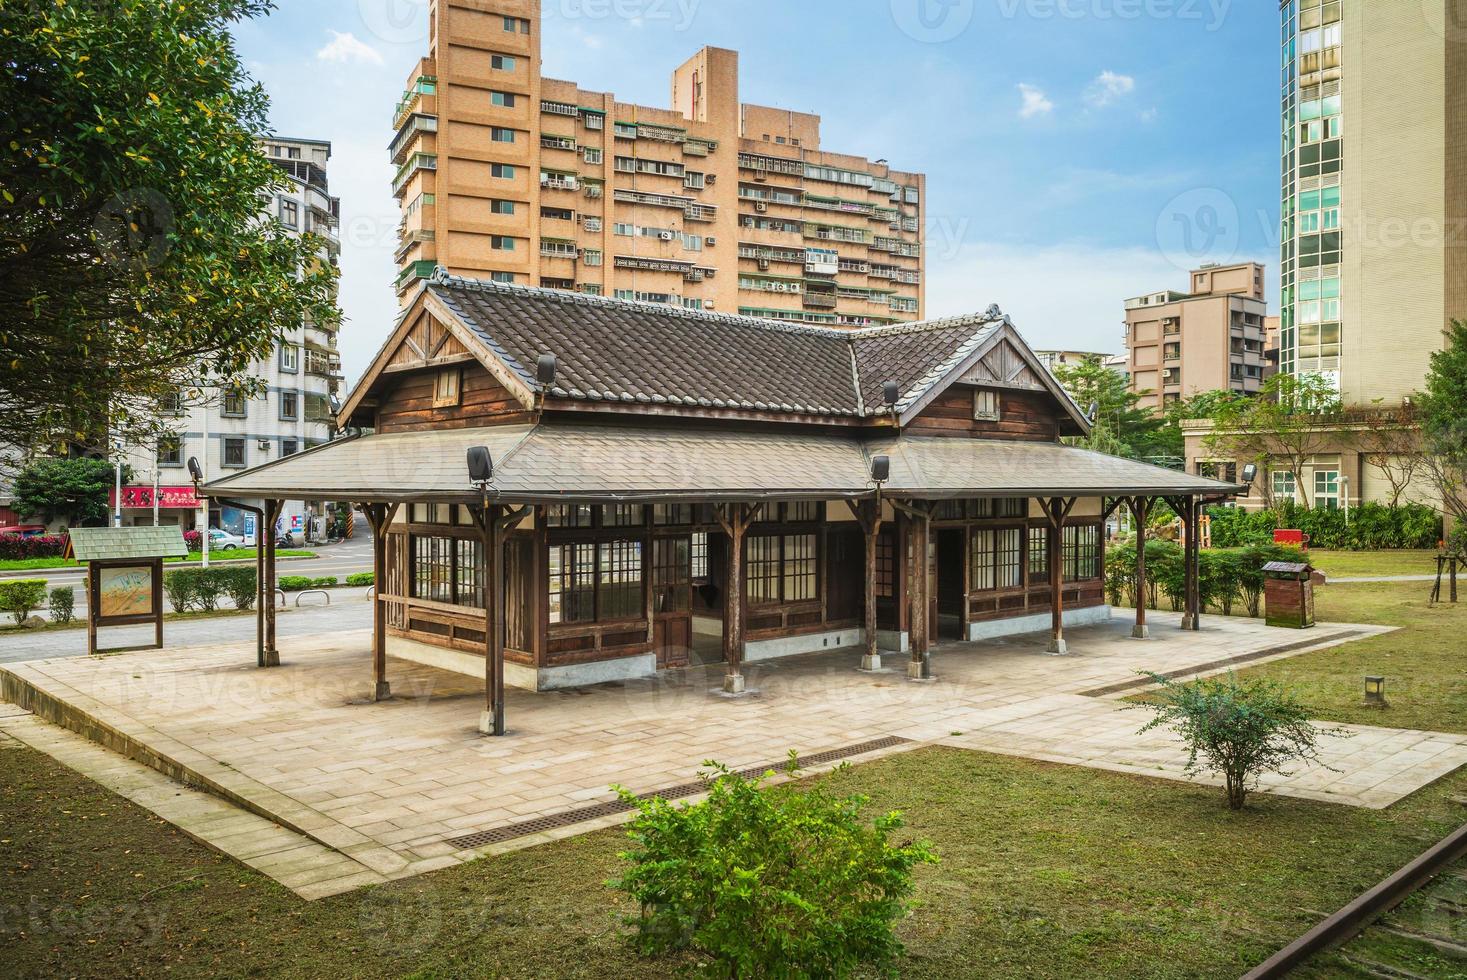 ehemaliger bahnhof und eisenbahn-gedenkpark in keelung city, taiwan foto